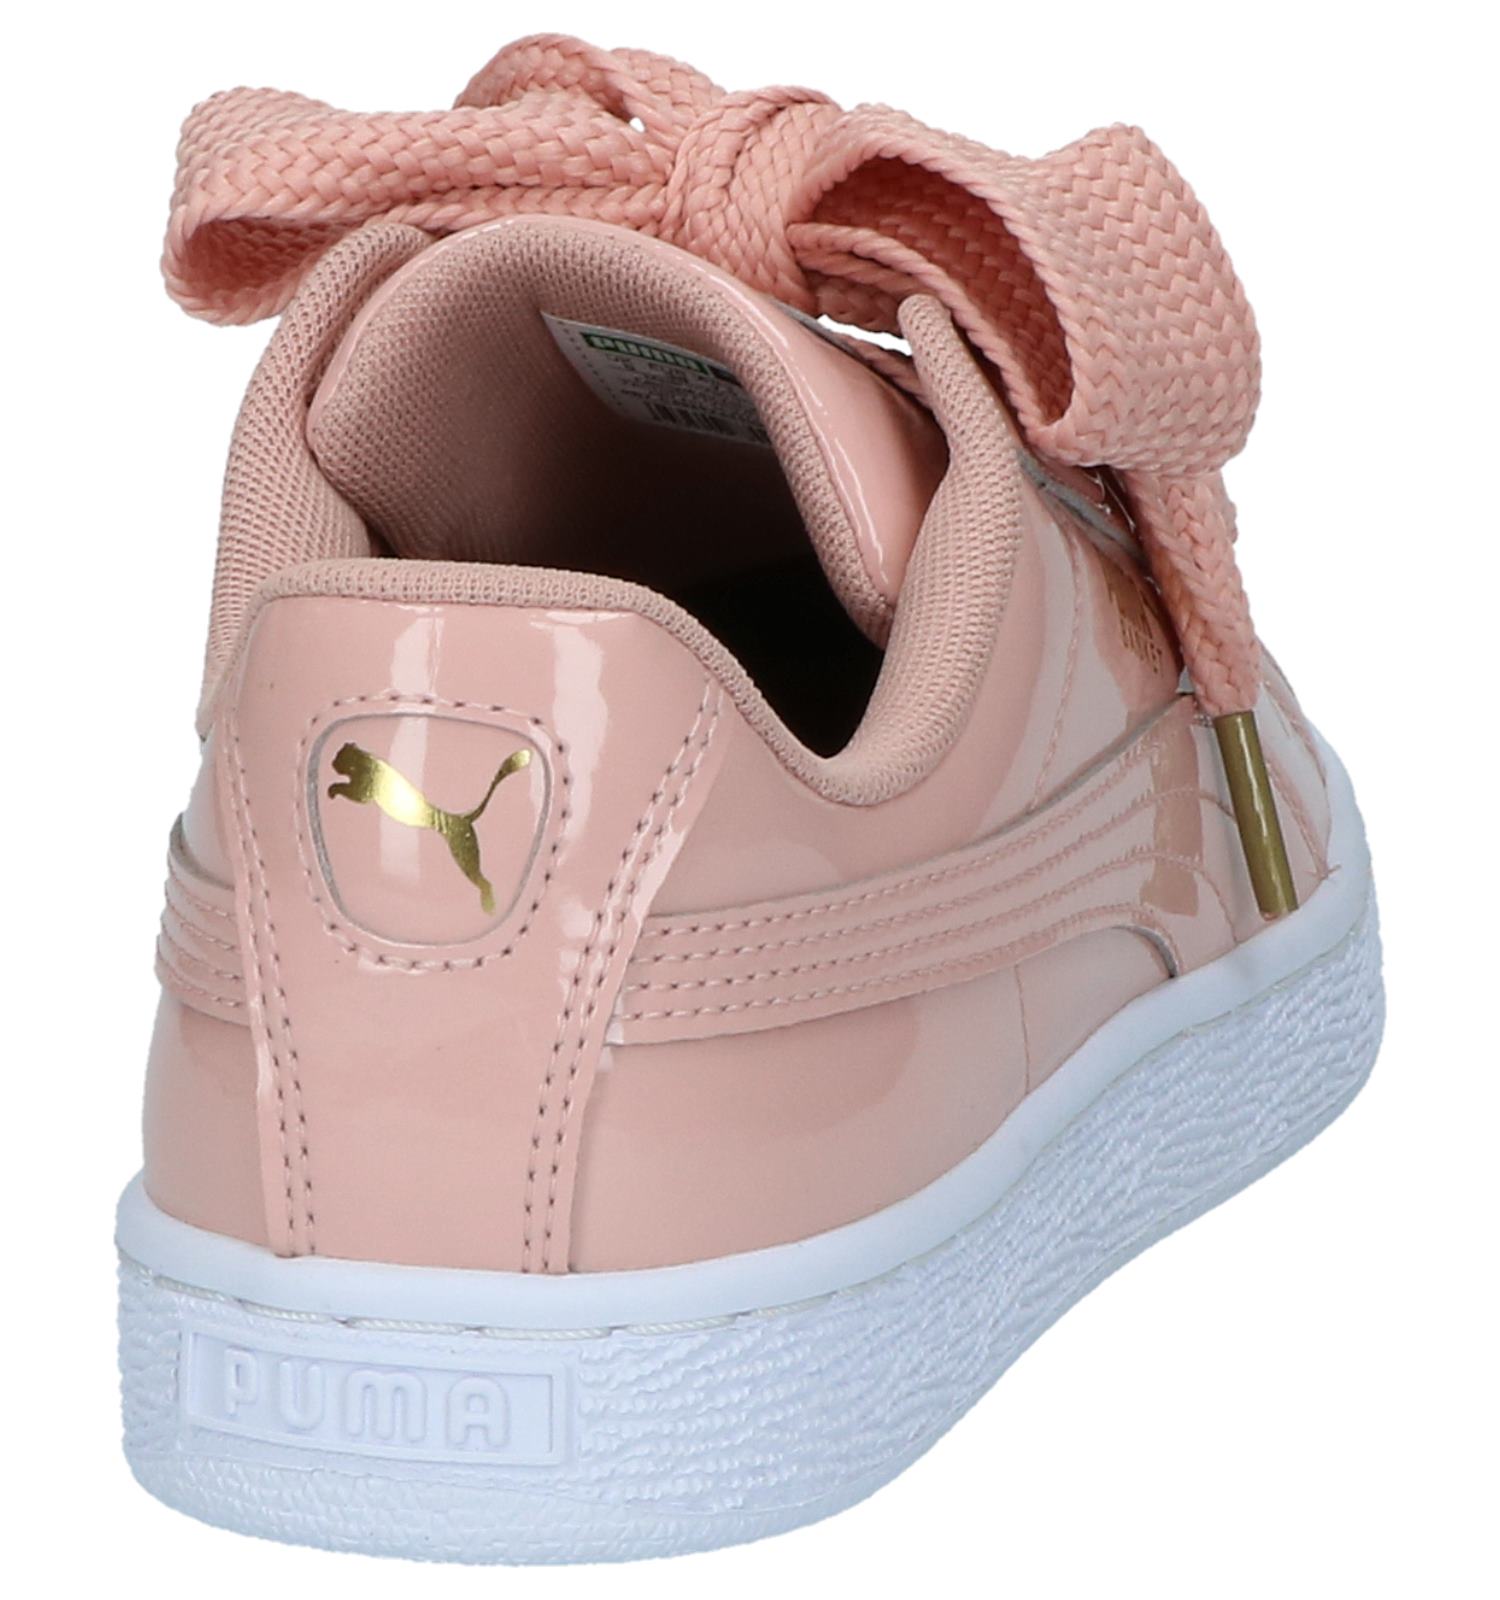 ademen Jane Austen Wierook Puma Basket Heart Patent Roze Sneakers | Dames Sneakers